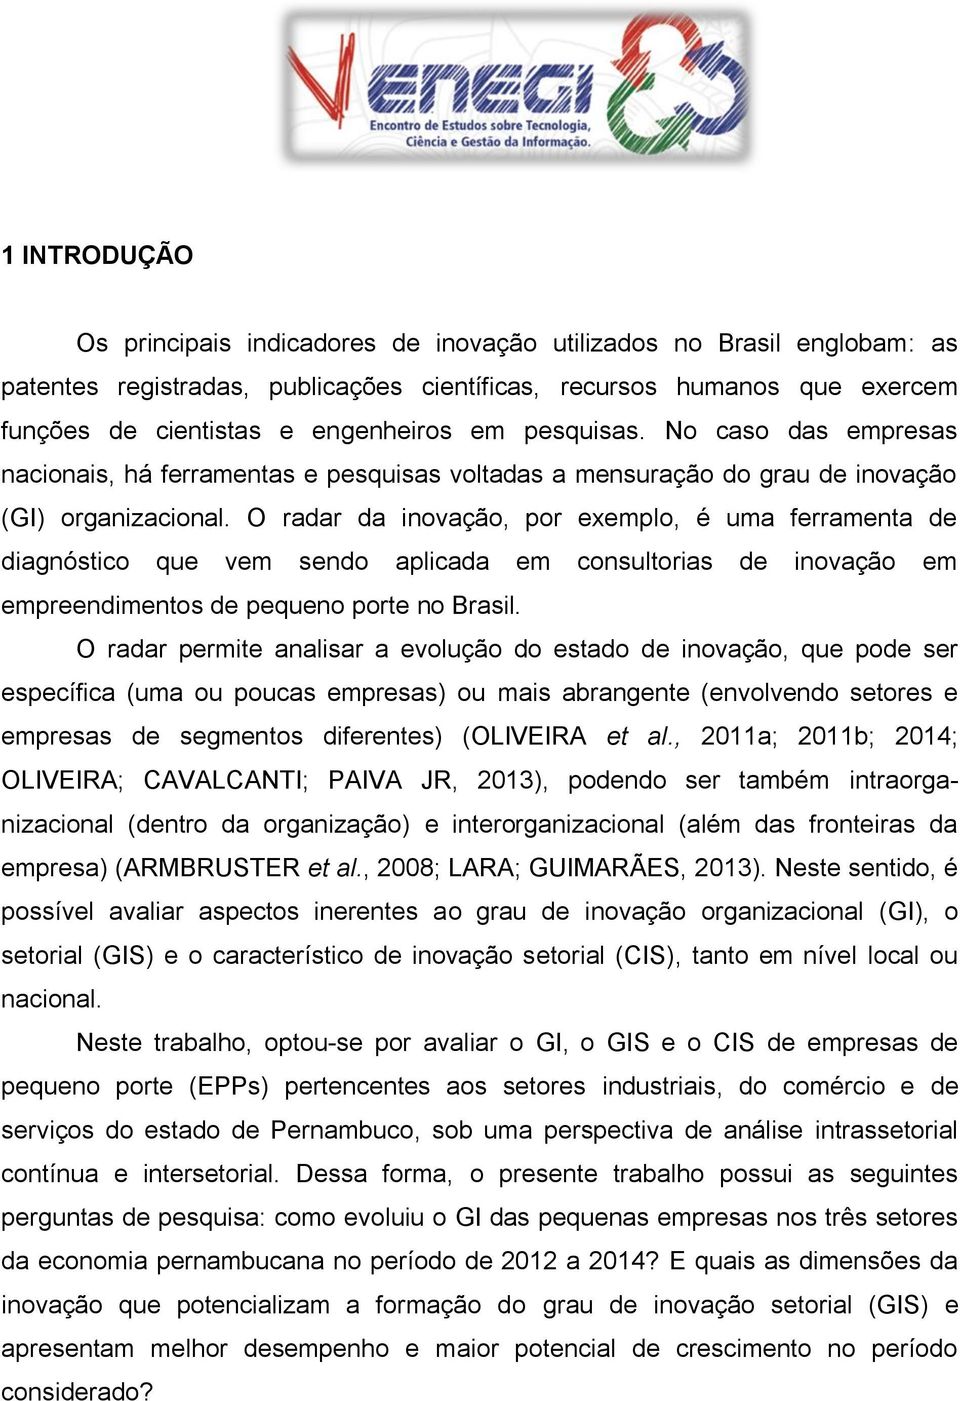 O radar da inovação, por exemplo, é uma ferramenta de diagnóstico que vem sendo aplicada em consultorias de inovação em empreendimentos de pequeno porte no Brasil.